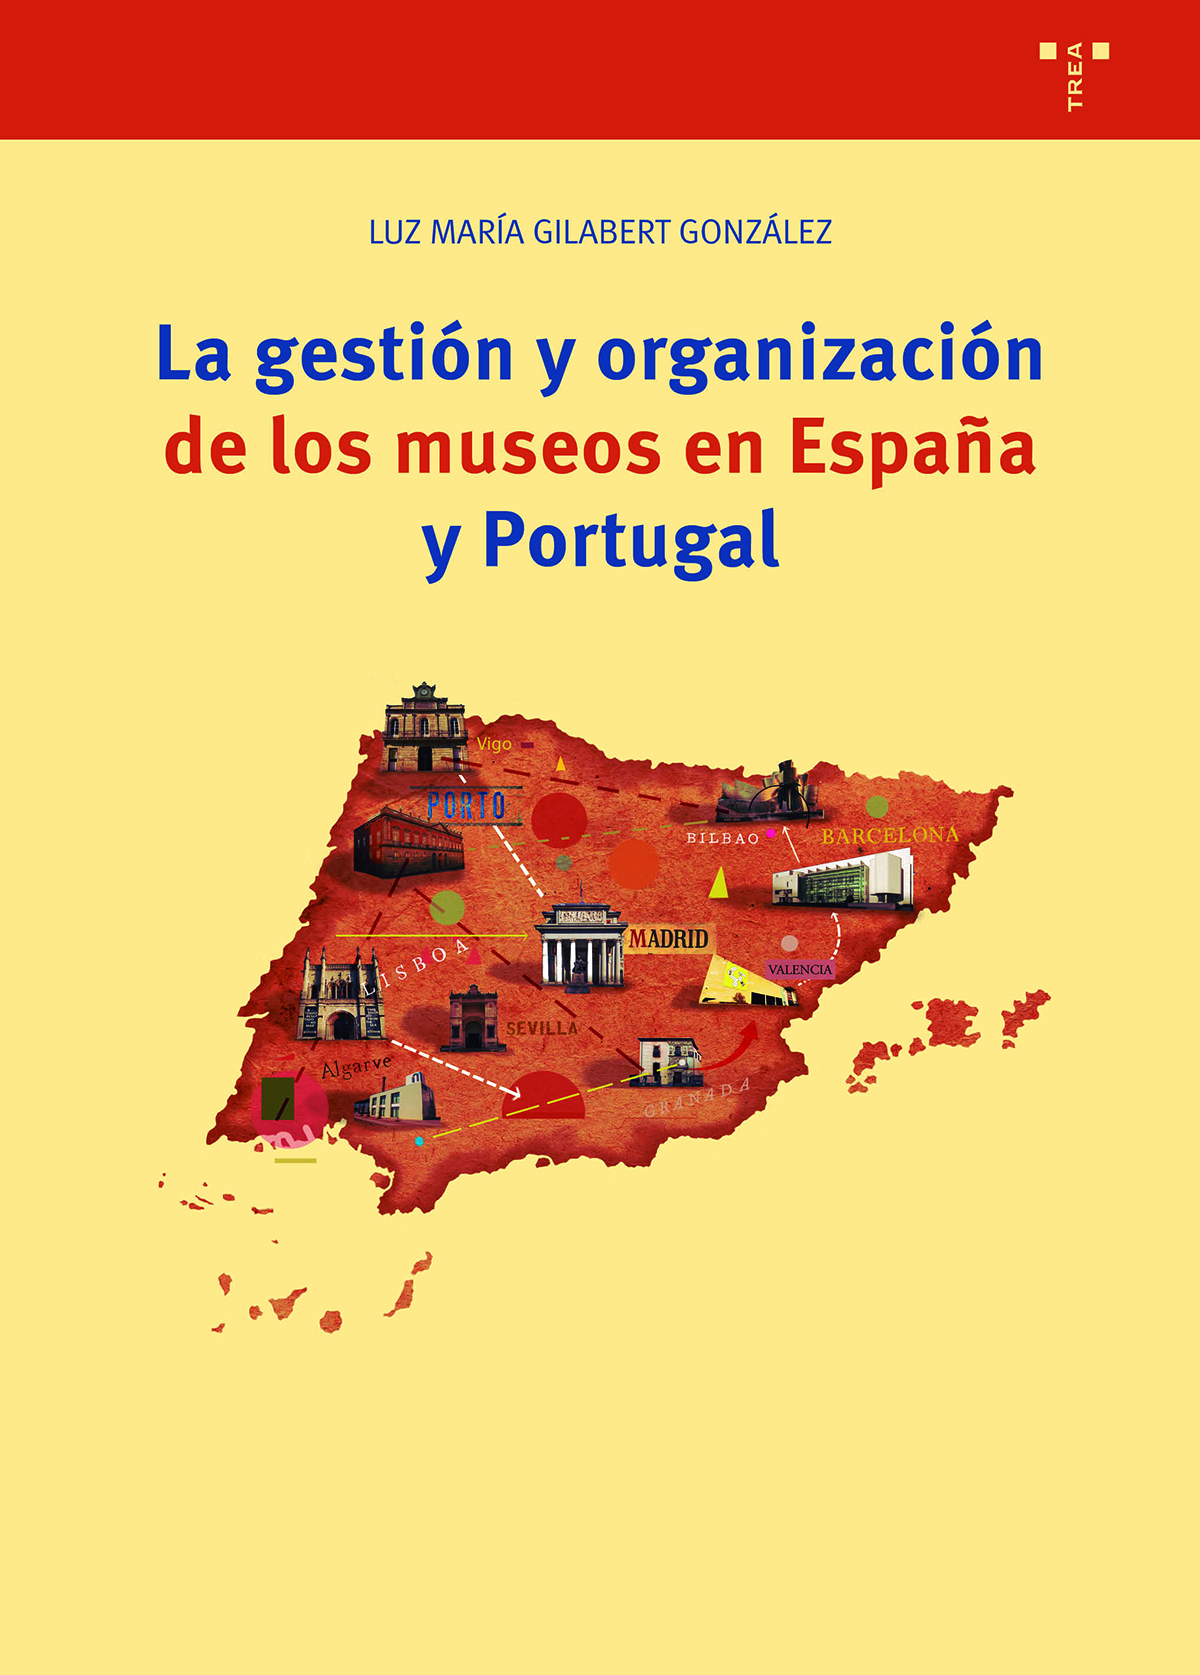 La gestión y organización de los museos en España y Portugal